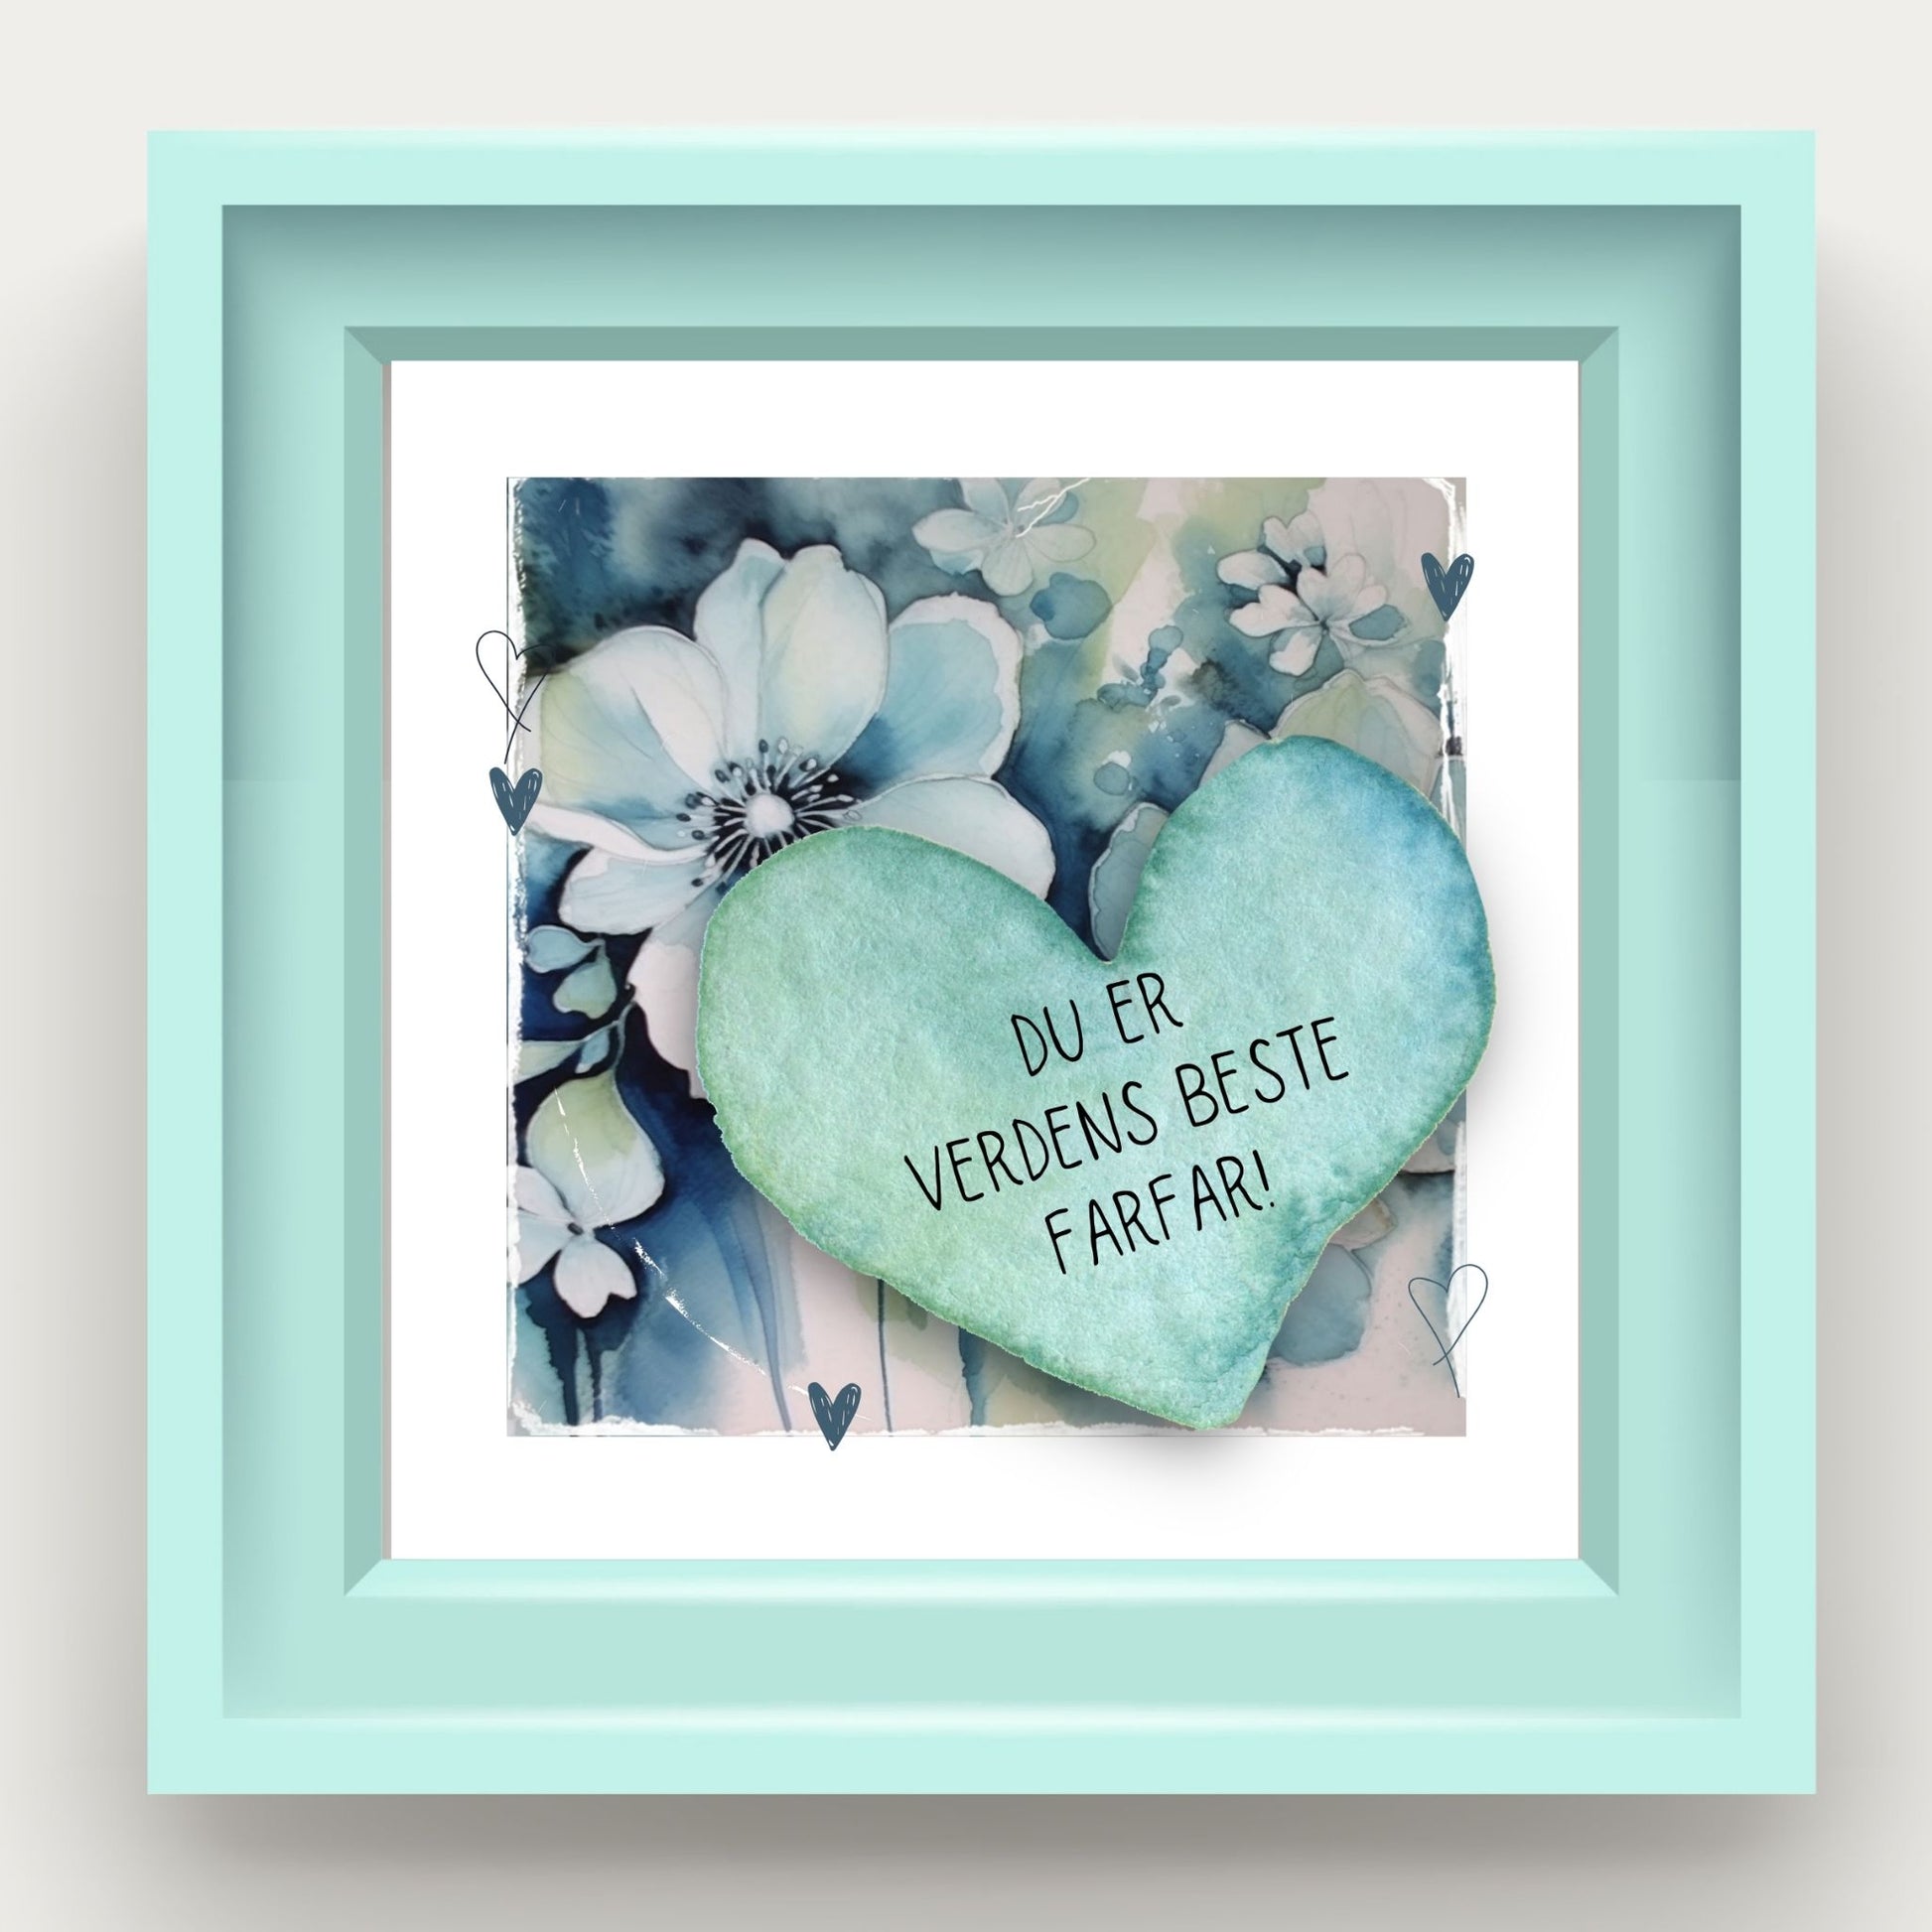 Grafisk plakat med et lyseblått hjerte påført tekst "Du er verdens beste farfar!". Bagrunn med blomster i blåtoner. Illustrasjonen viser plakaten i en lyseblå ramme.